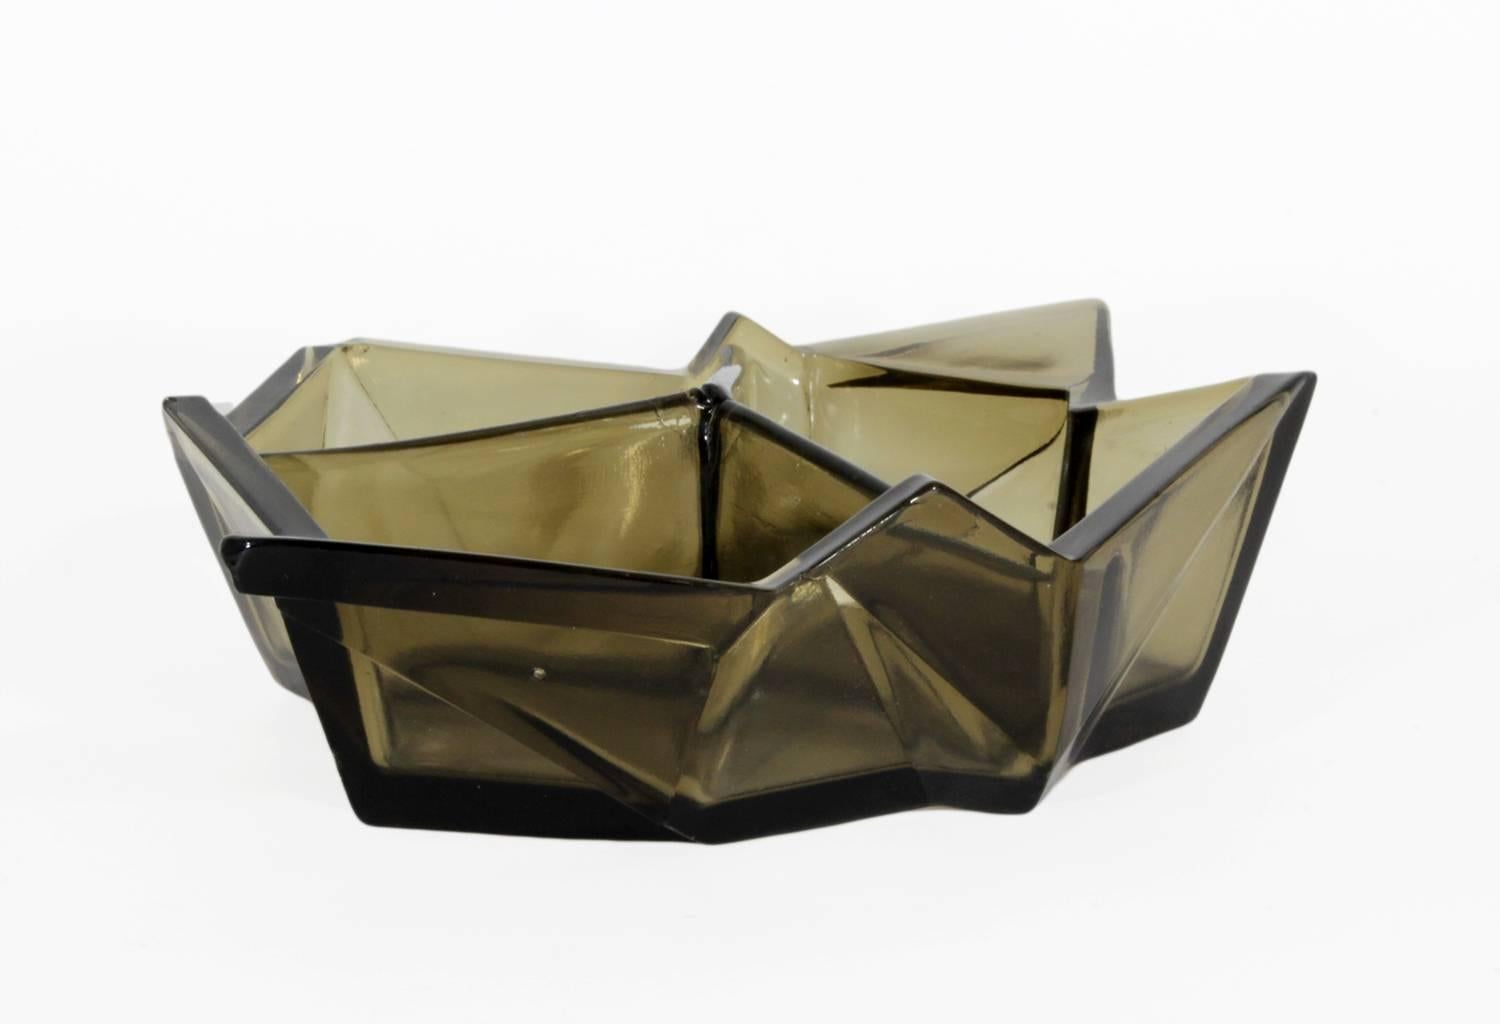 American Ruba Rombic Art Deco Era Glass Bon Bon Dish by Reuben Haley